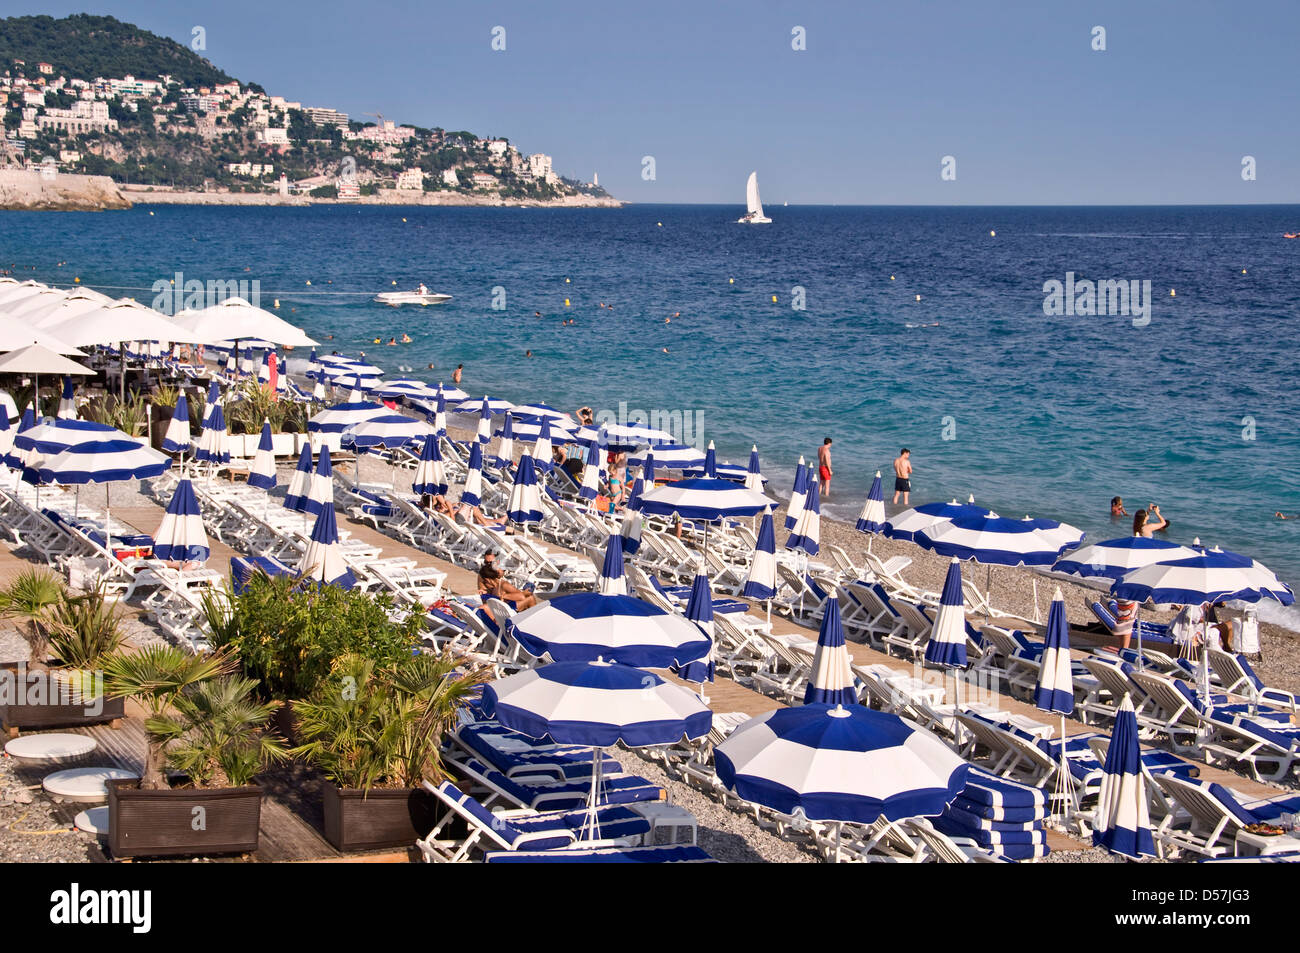 Playa privada con sombrillas de playa azul en el fondo del mar, vista desde arriba - Niza, Francia Foto de stock